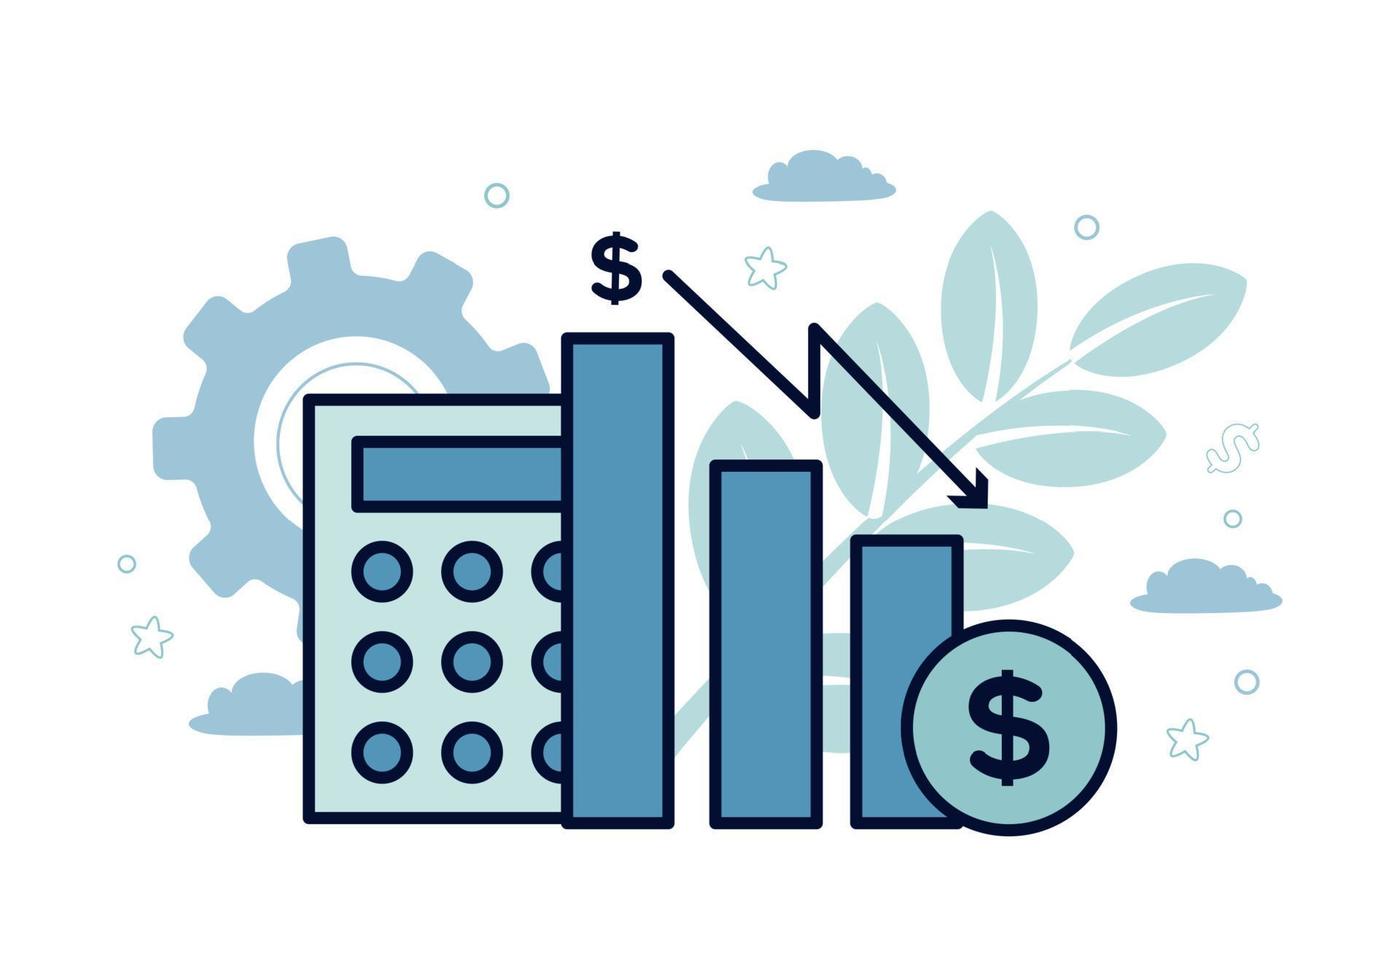 finansiera. vektor illustration av ekonometri. ikoner av kalkylator, bar Diagram, dollar ikon, ner pil, på de bakgrund av växlar, växter, löv, moln, stjärnor